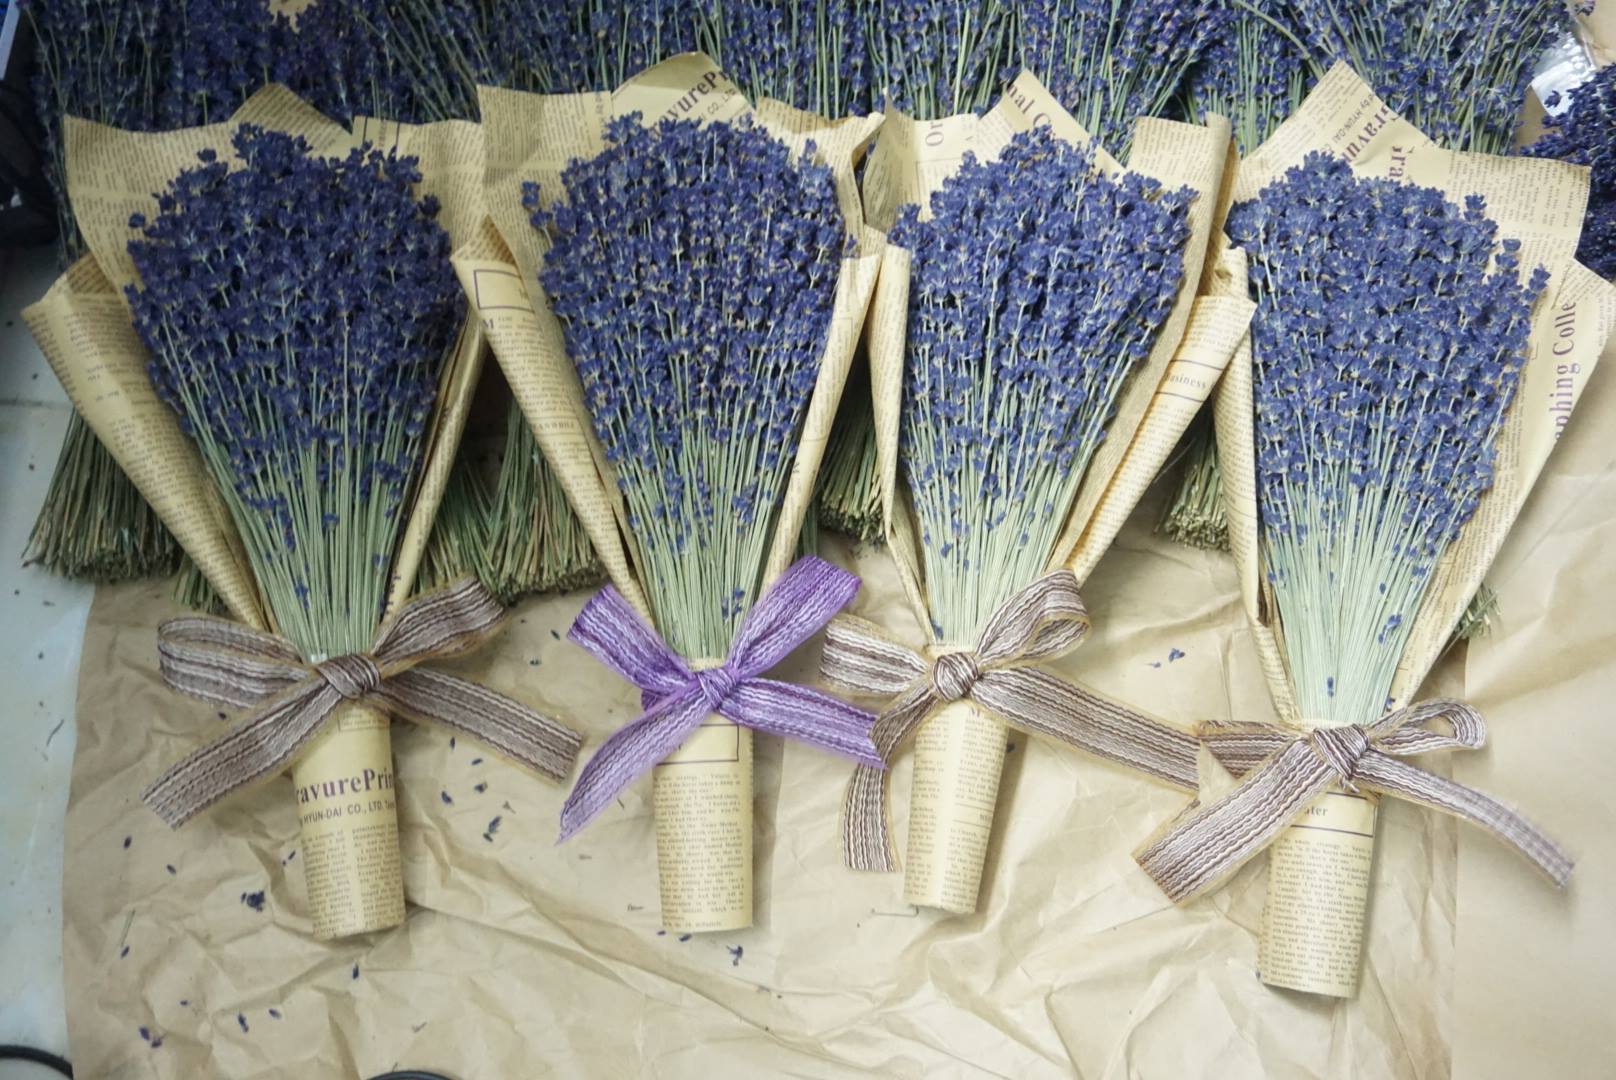 Bạn có thể tham khảo ngay mẫu hoa Lavender khô được cắm trong bình khá lạ mắt và đem đến hương thơm cho không gian được trang trí